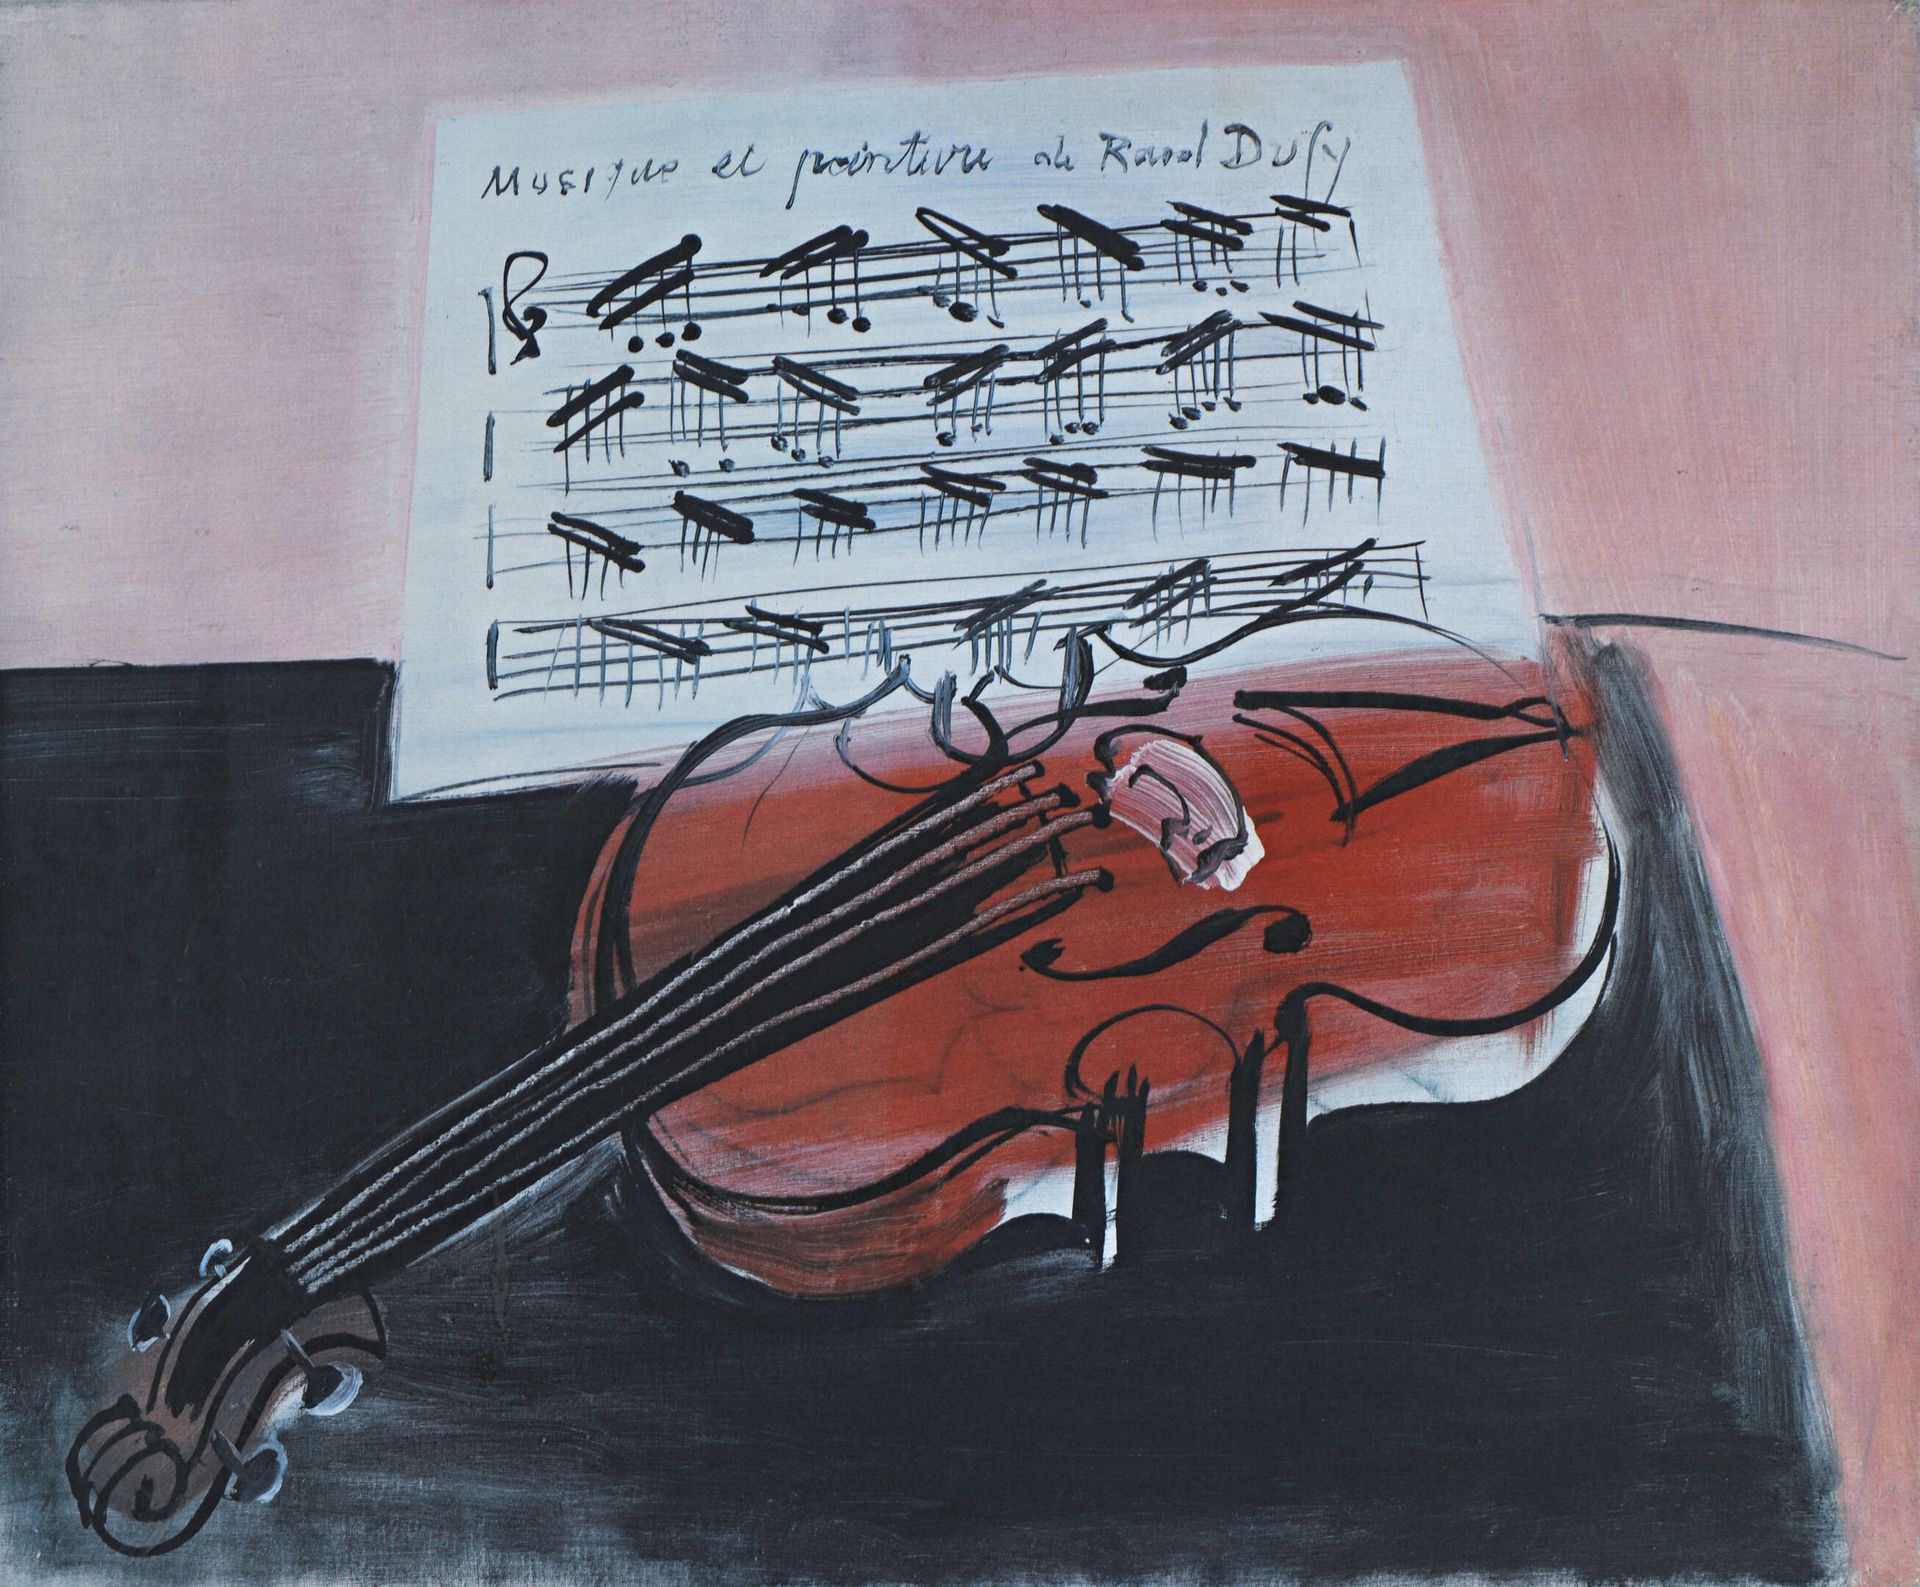 Null Nach RAOUL DUFY
"Musik und Malerei"
Offsetdruck auf Papier.
49 x 69 cm.